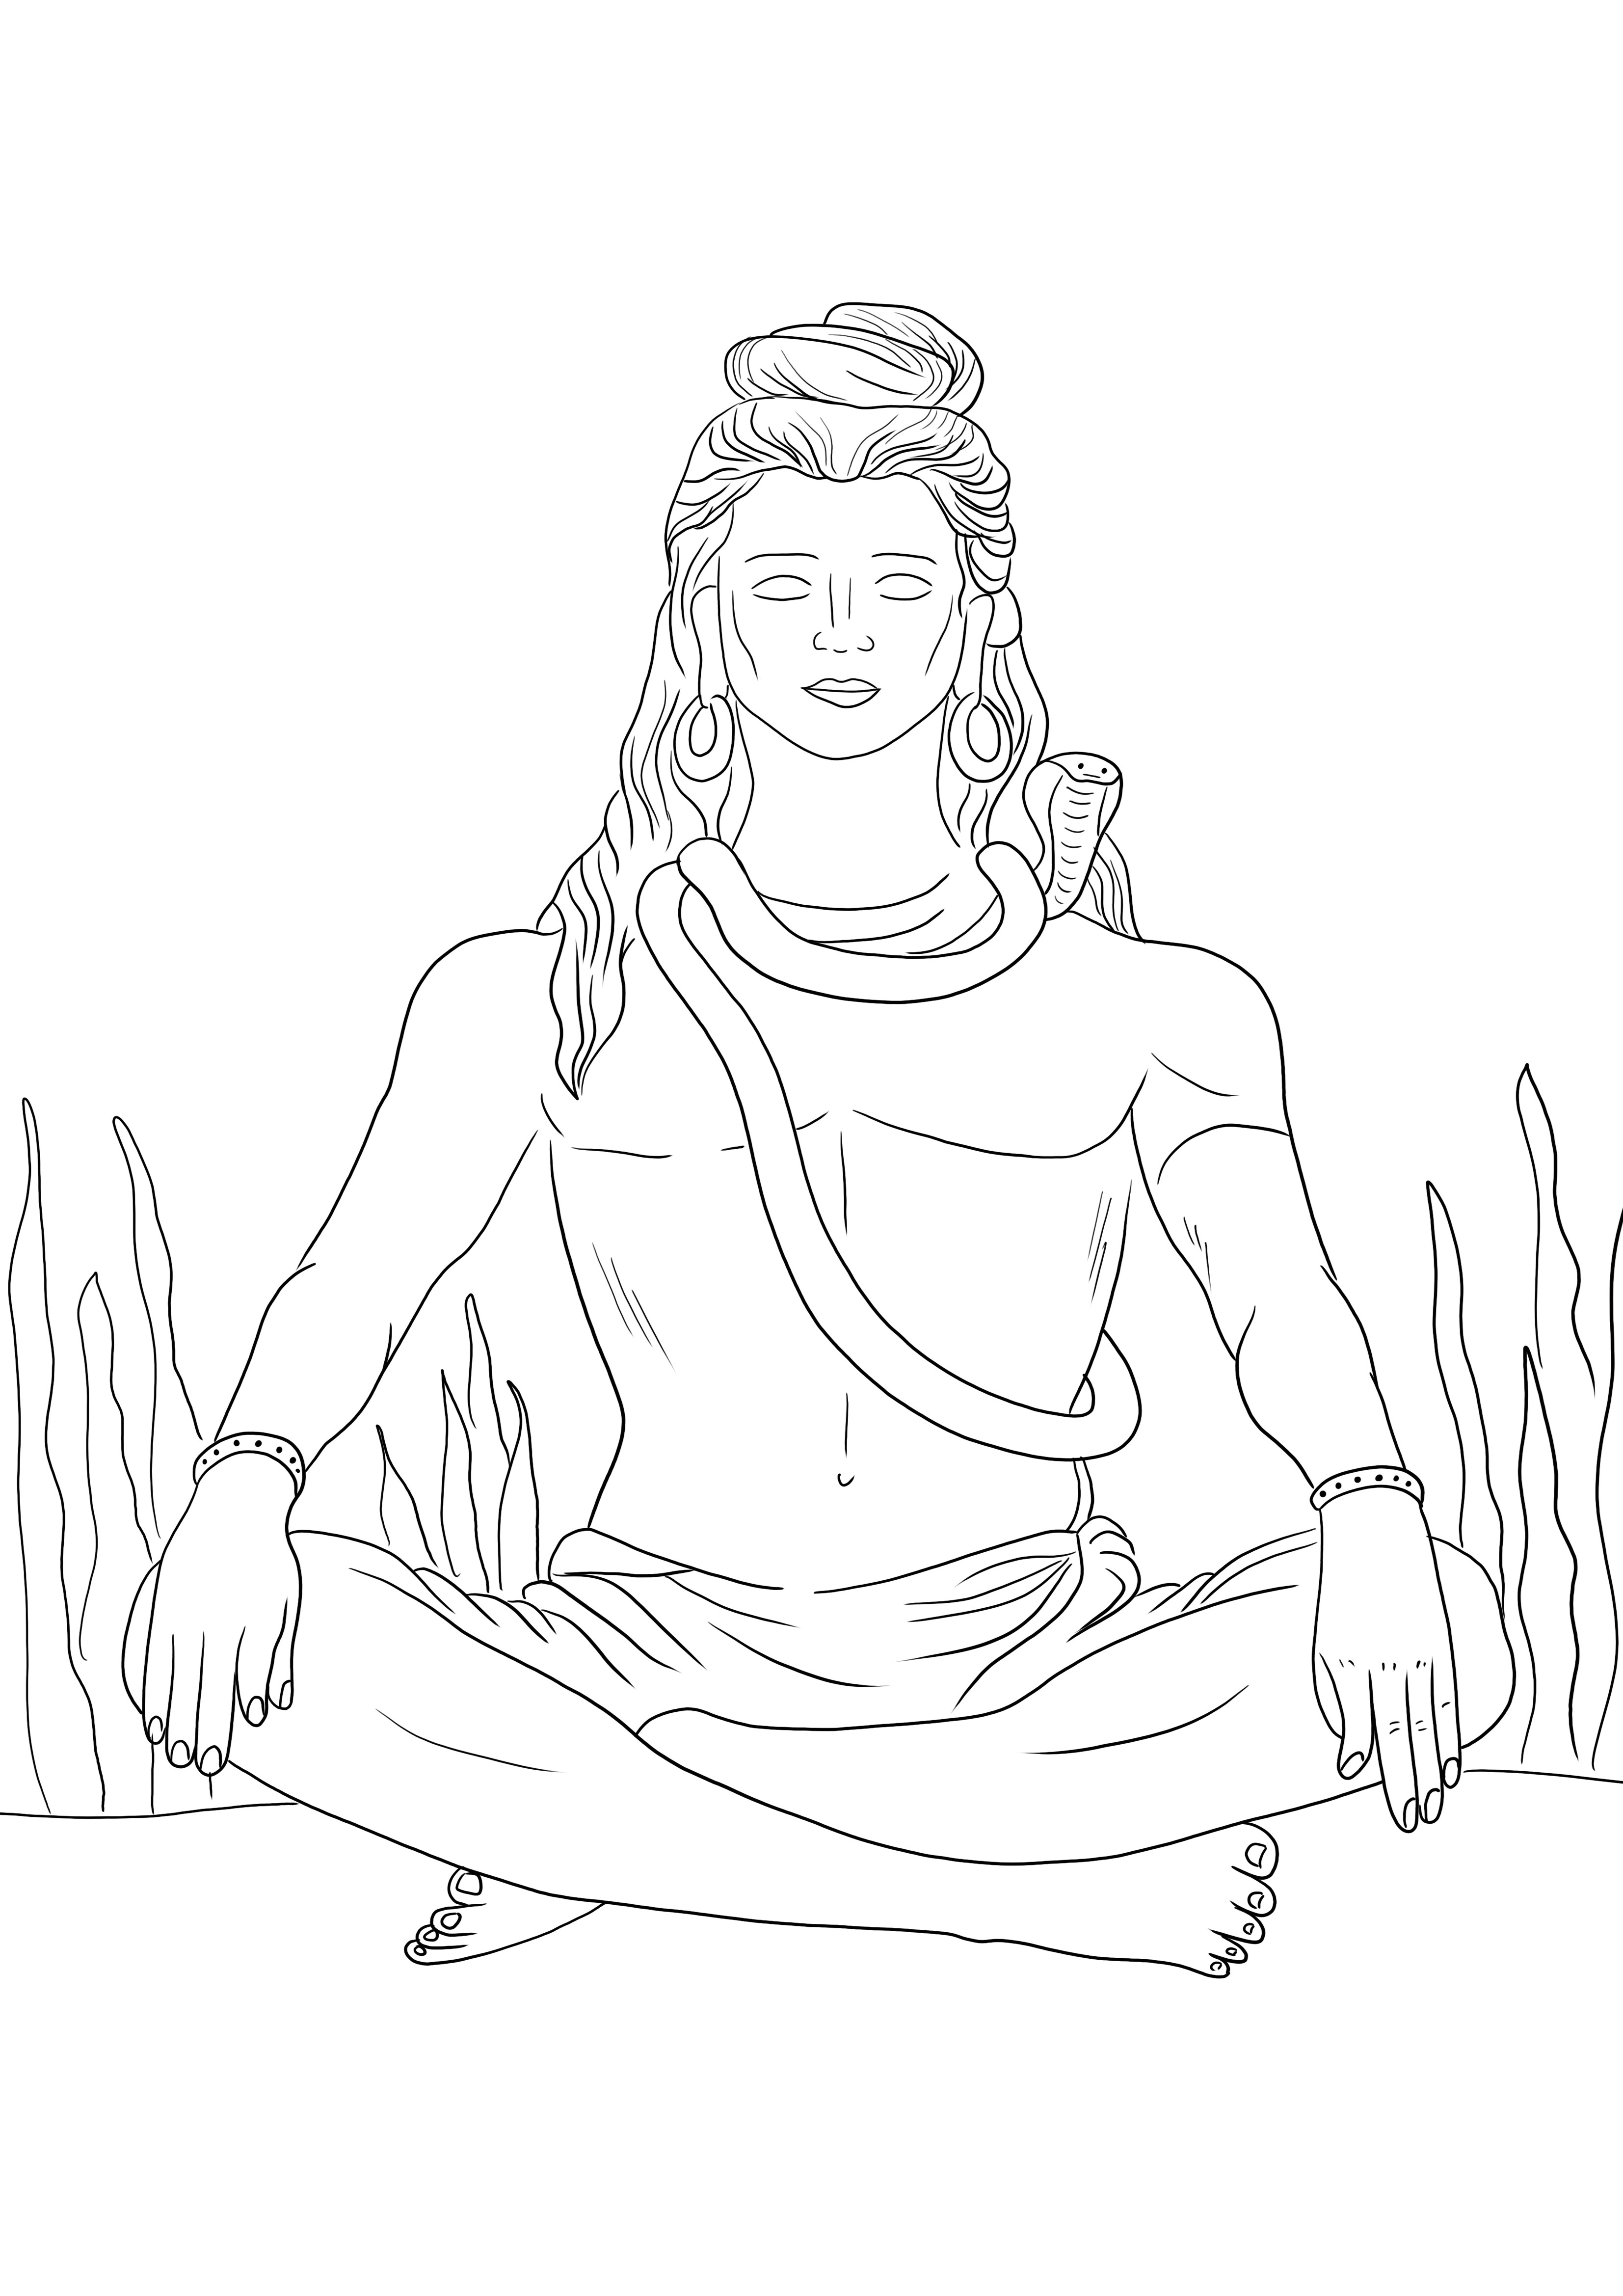 Lord Shiva jest darmowy do druku, gotowy do pokolorowania i darmowy do wydrukowania